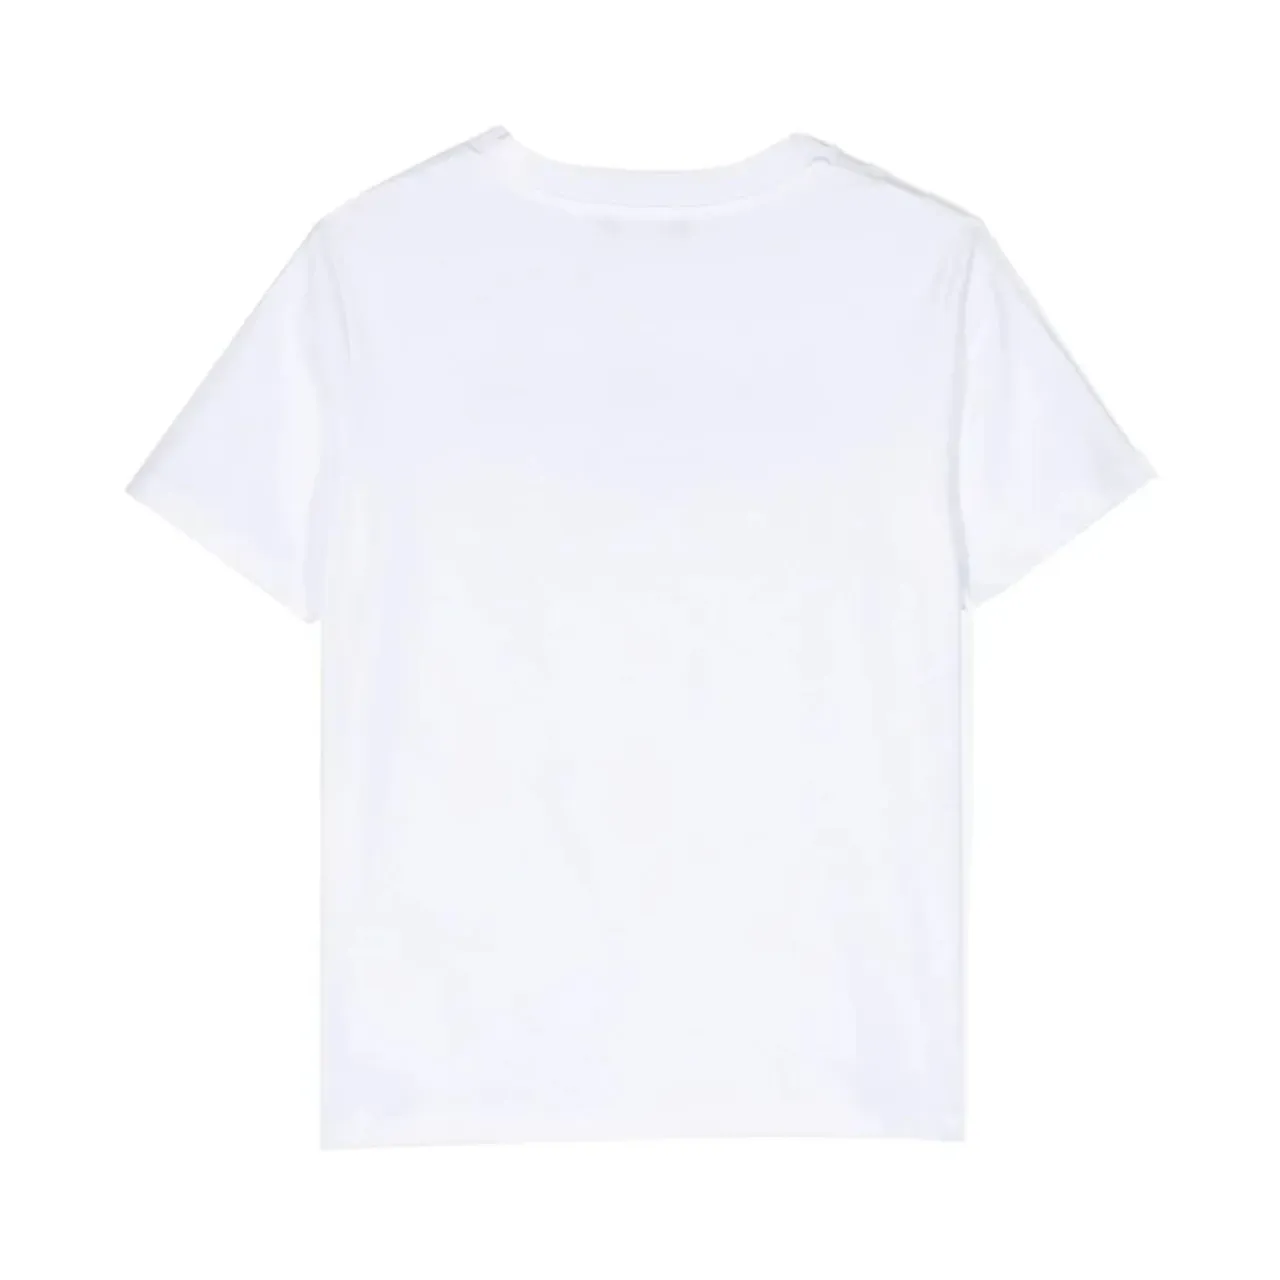 Balmain , Kids White Cotton T-shirt 3D Logo ,White male, Sizes: